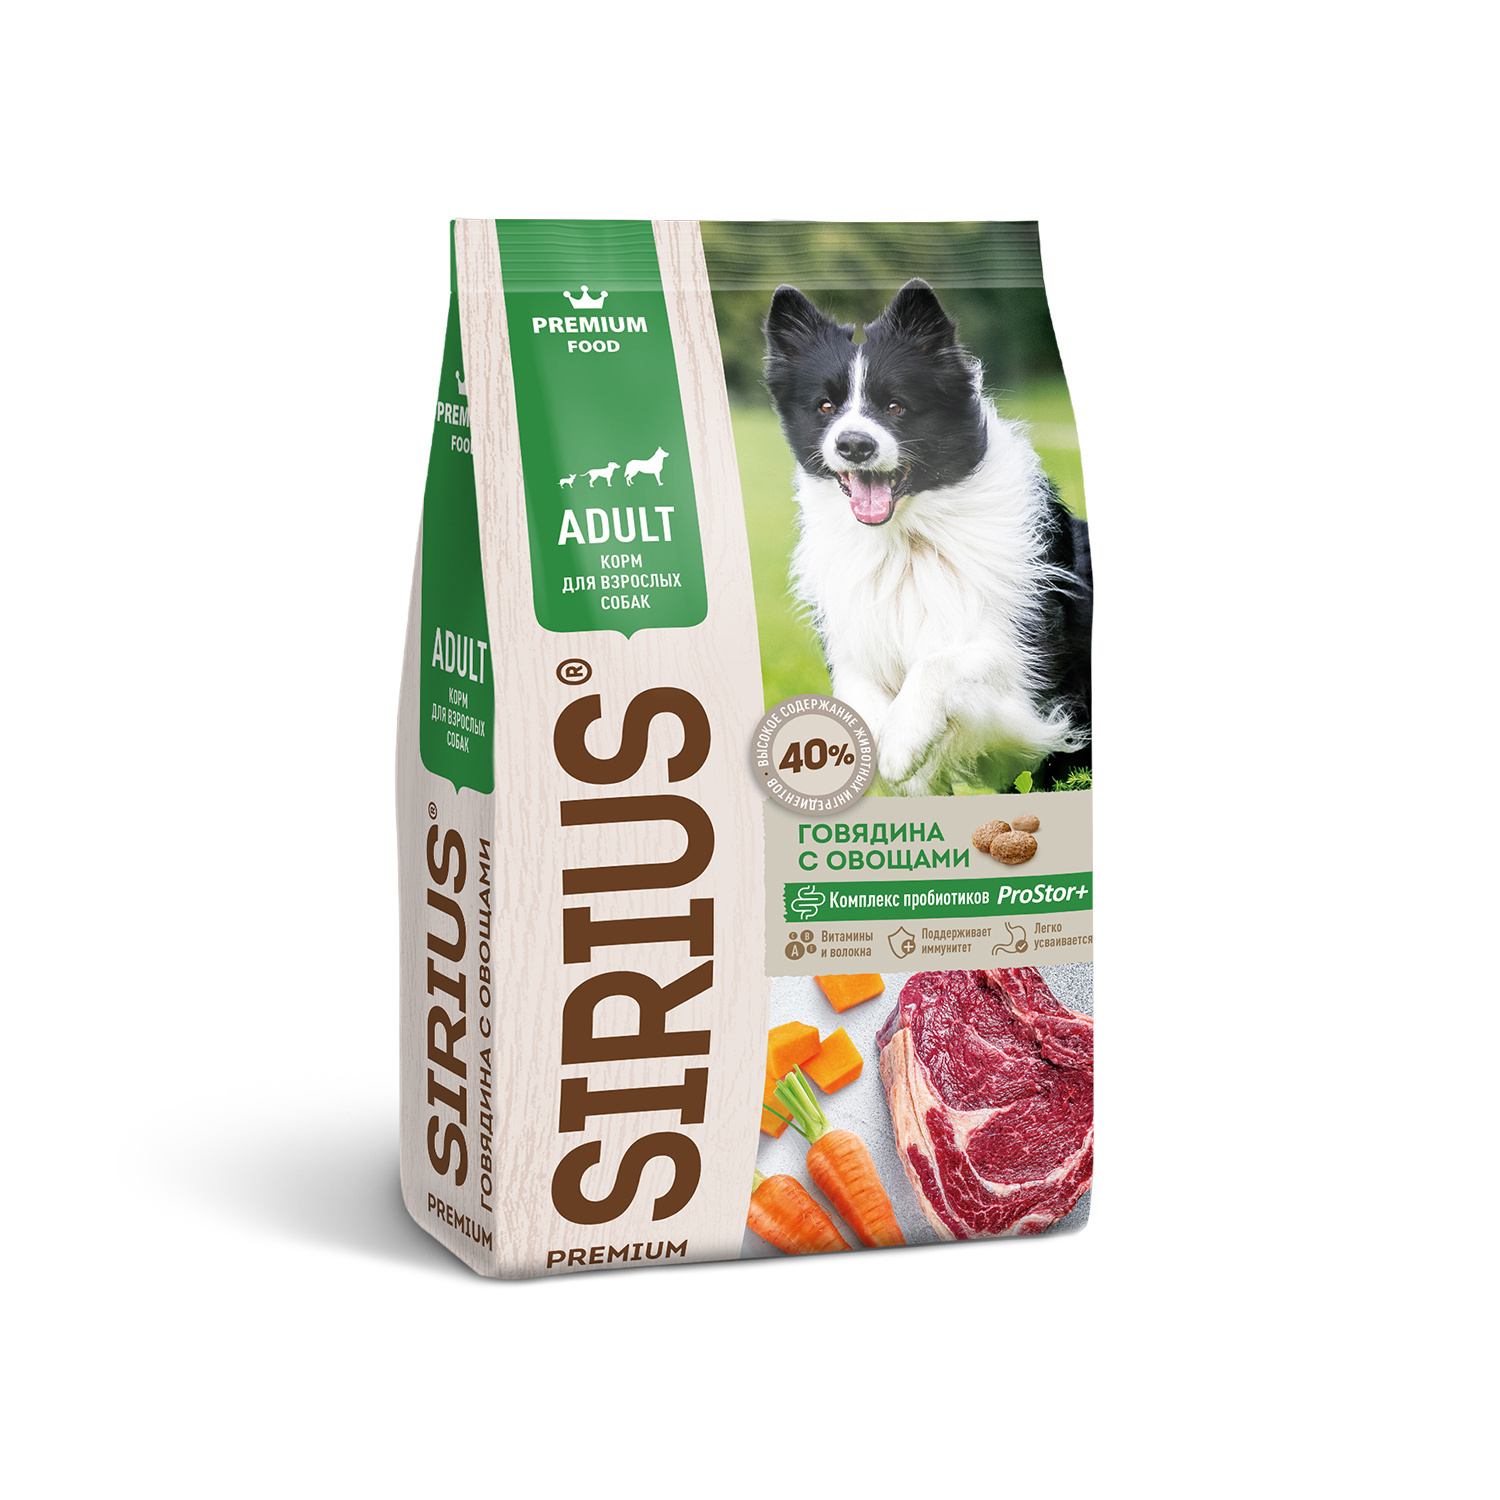 Sirius Sirius сухой корм для собак, говядина с овощами (2 кг) sirius sirius сухой корм для котят с мясом индейки 1 5 кг